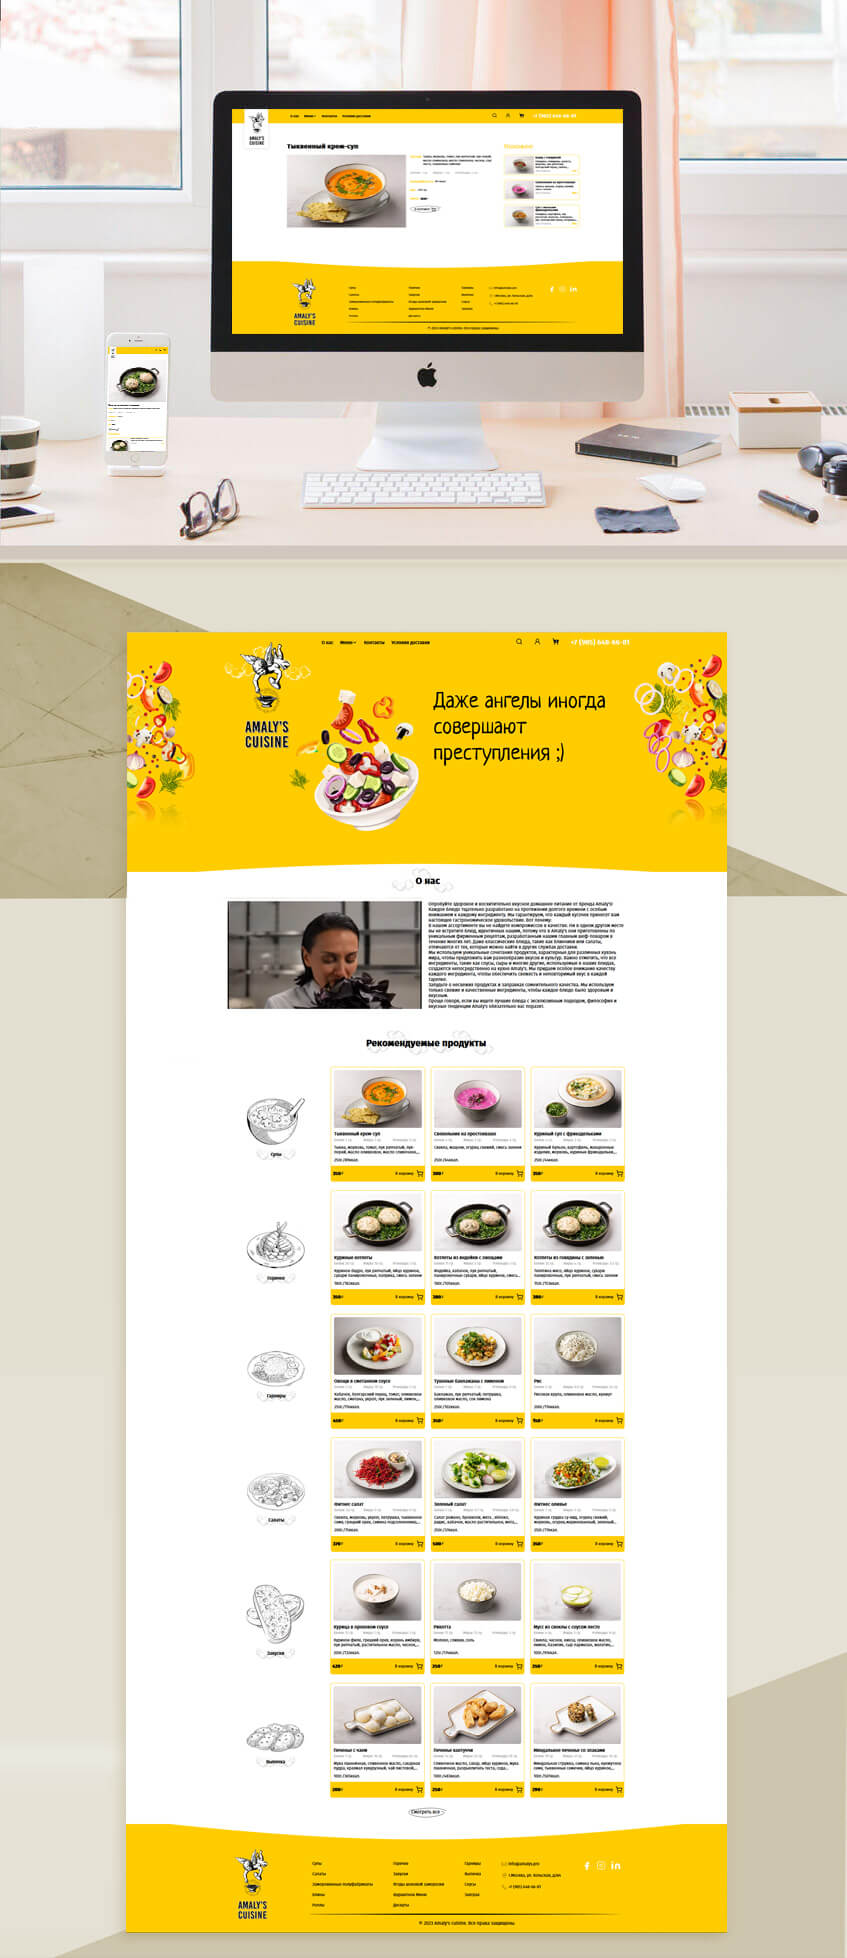 amalys cuisine online shop development